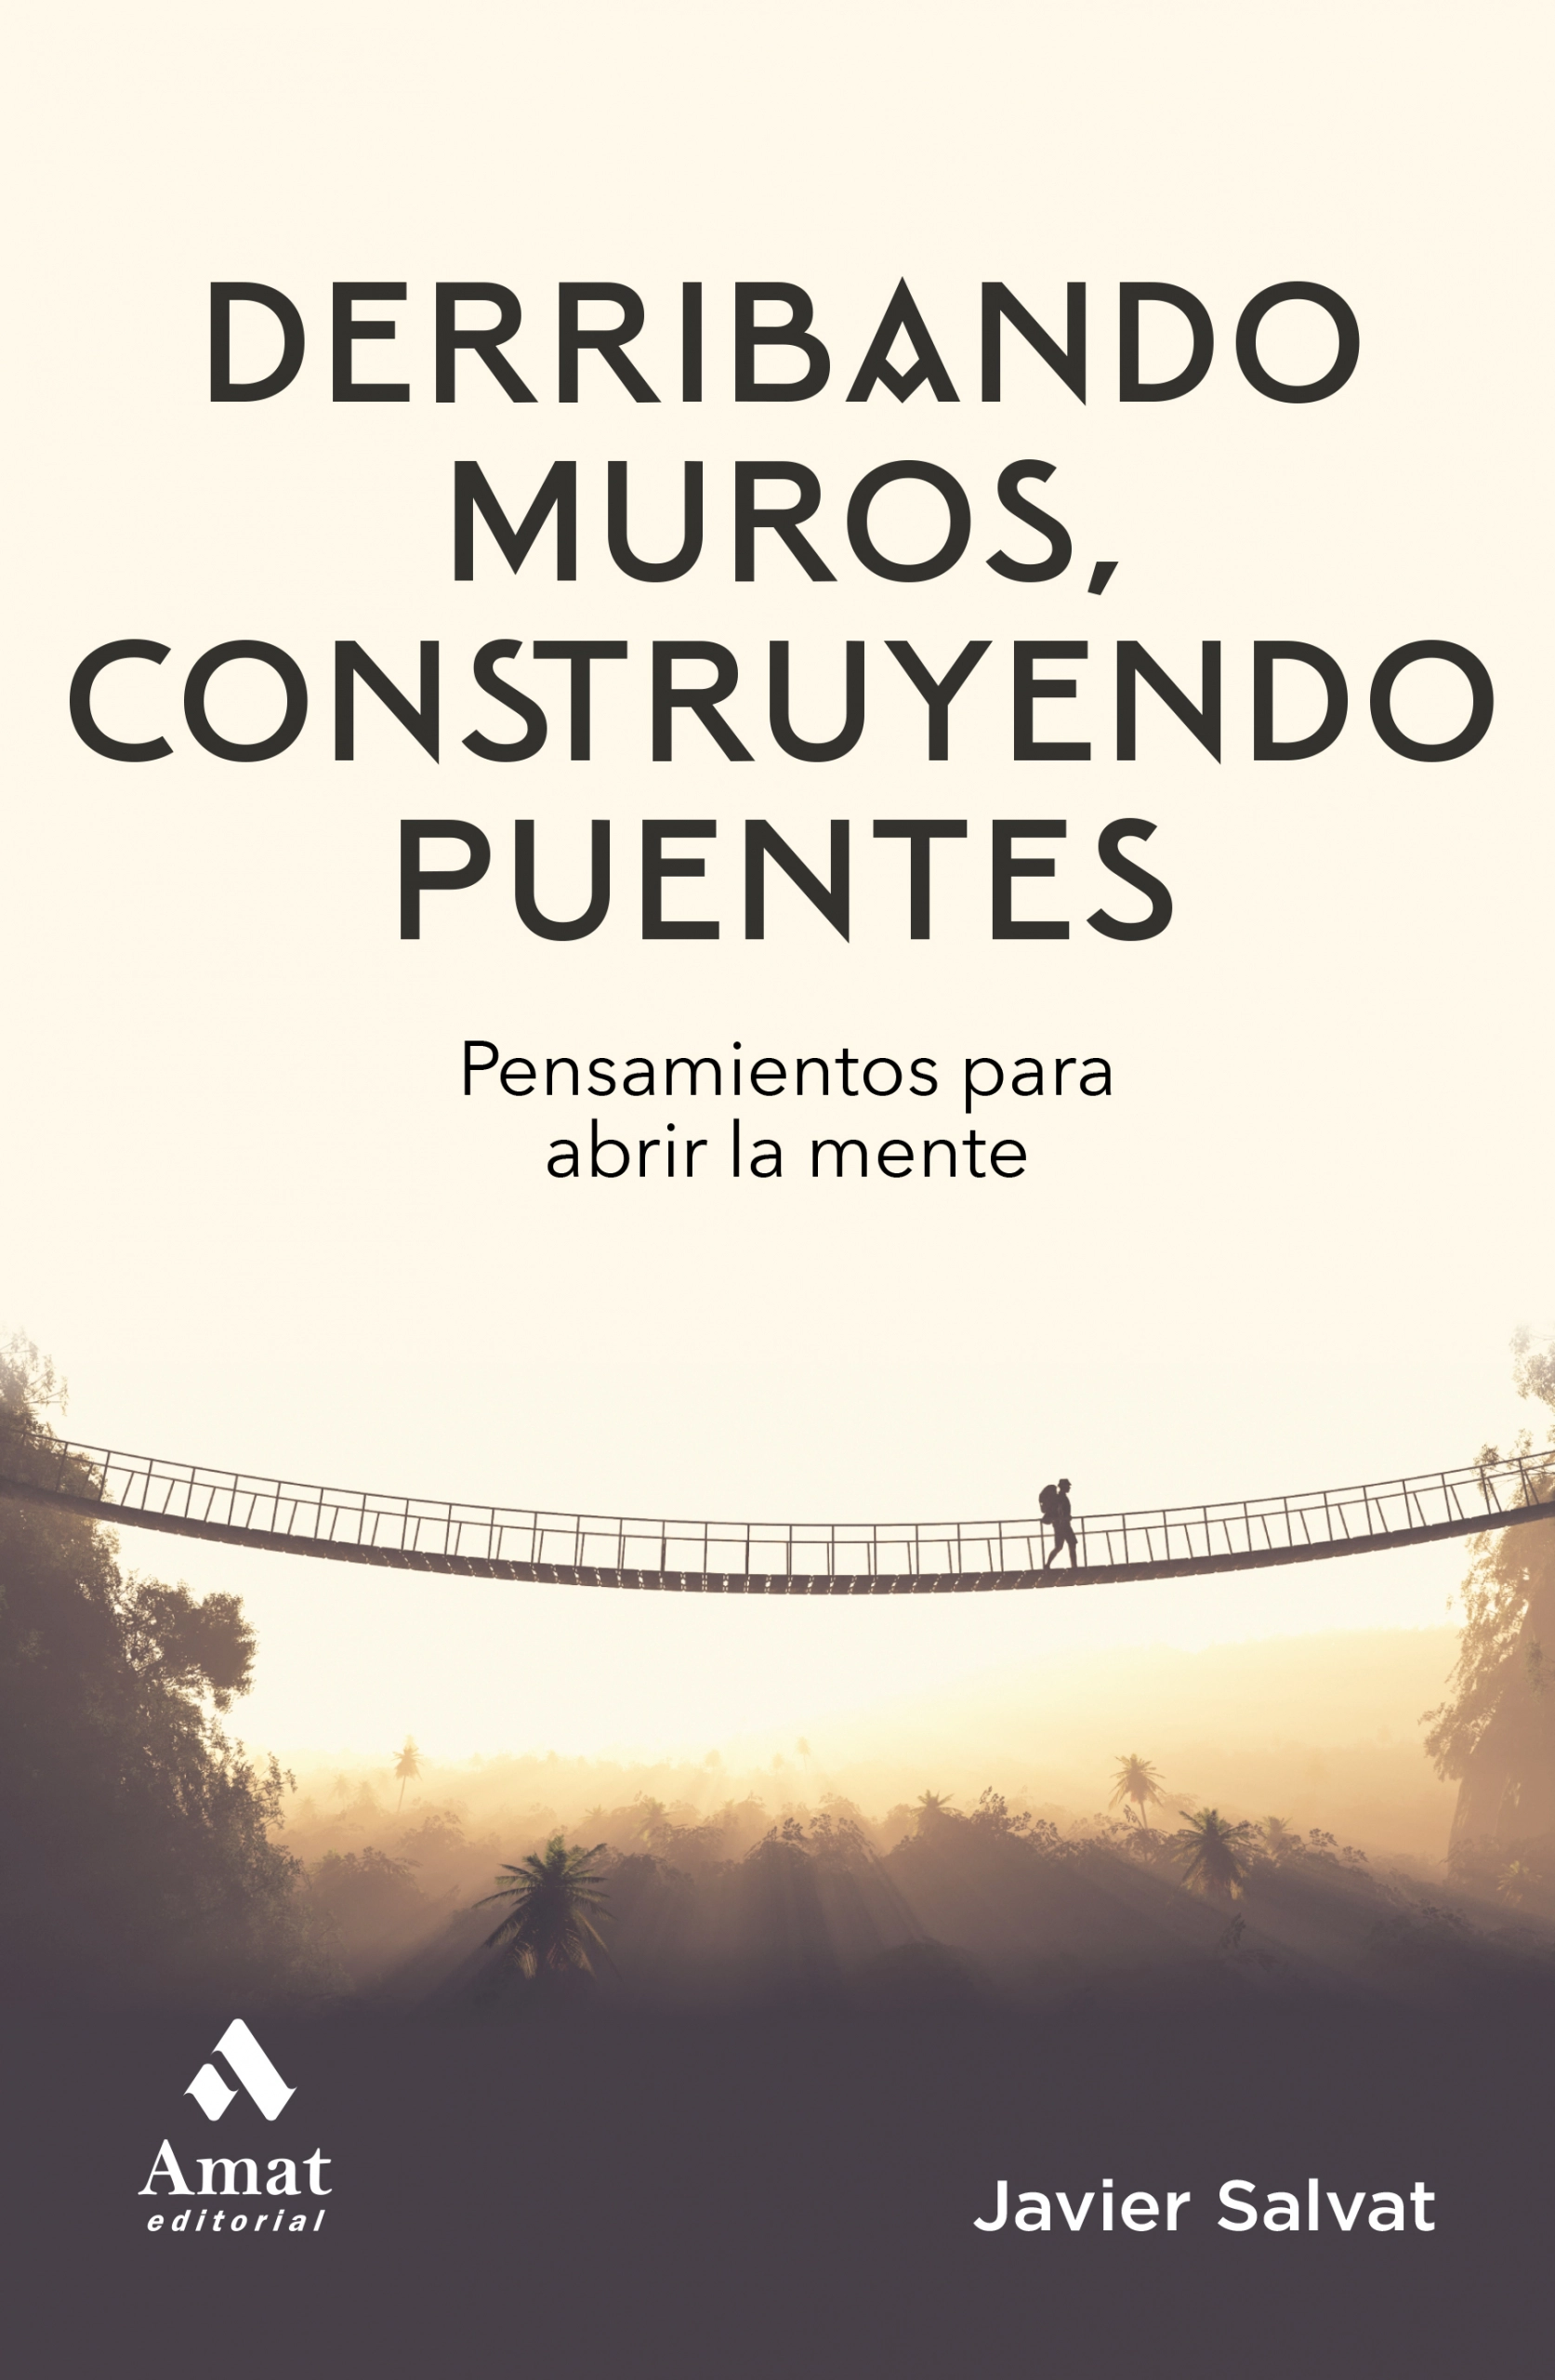 Derribando muros, construyendo puentes | Javier Salvat | Libros para vivir mejor